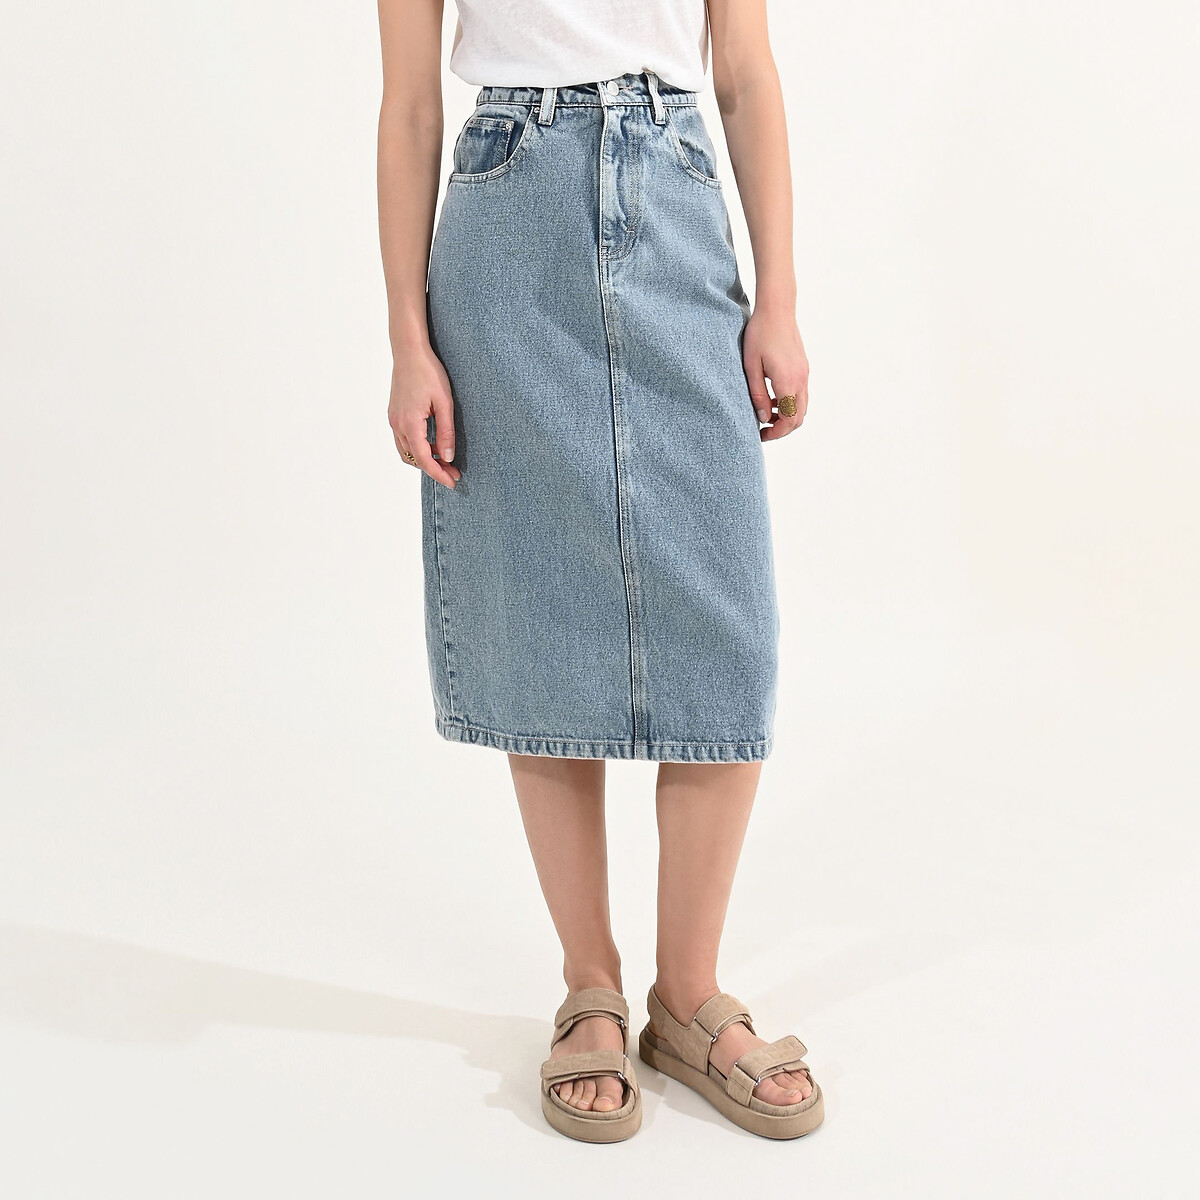 юбка laredoute юбка короткая из джинсовой ткани s синий Юбка длинная из джинсовой ткани XL синий